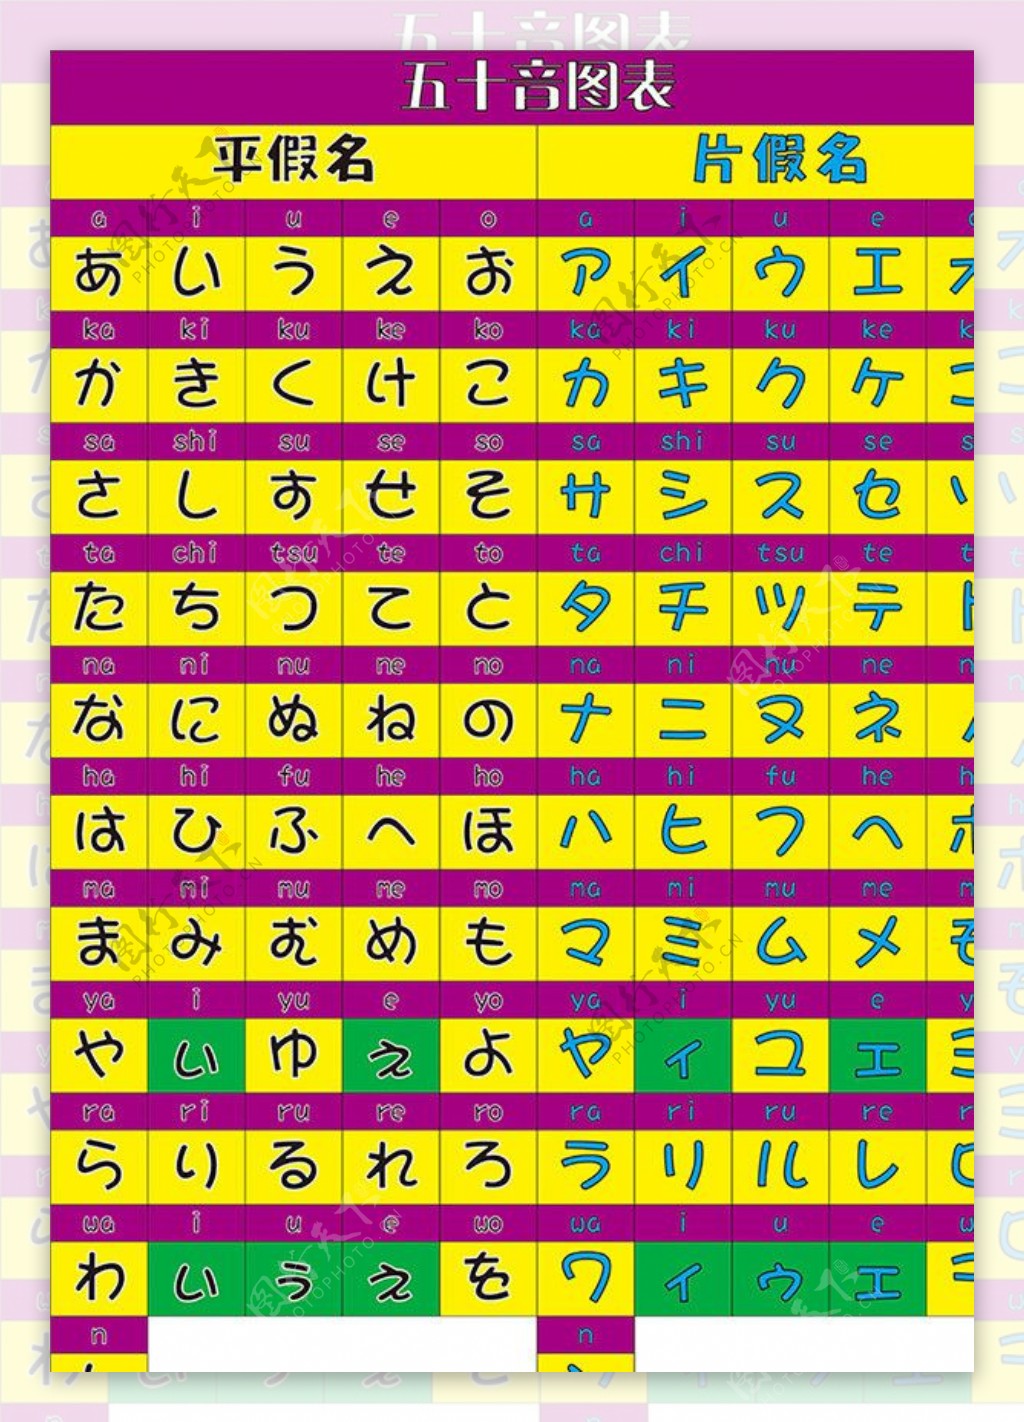 日文卡通字体50音图图片